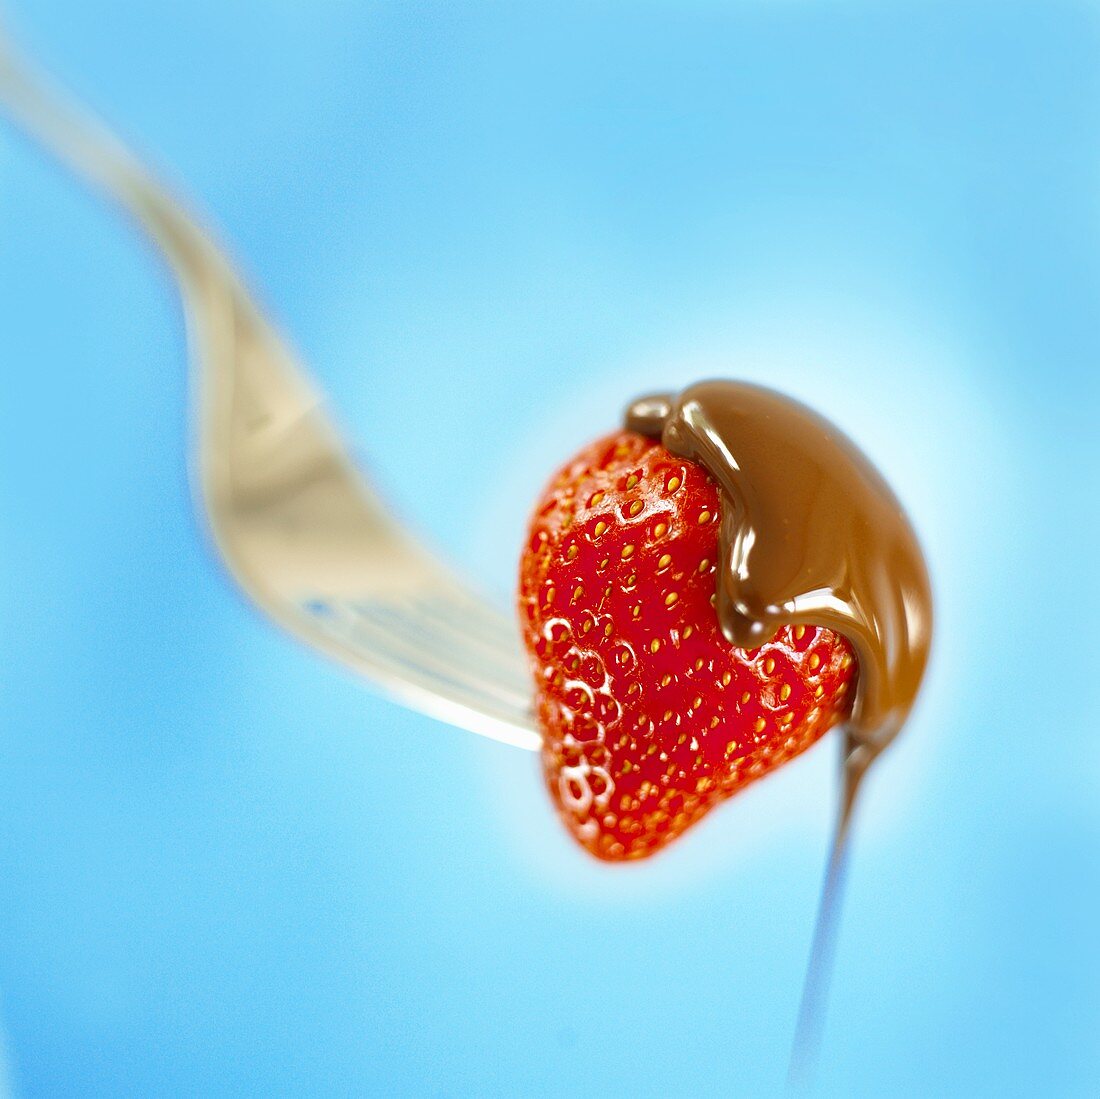 Flüssige Schokolade fließt von einer Erdbeere